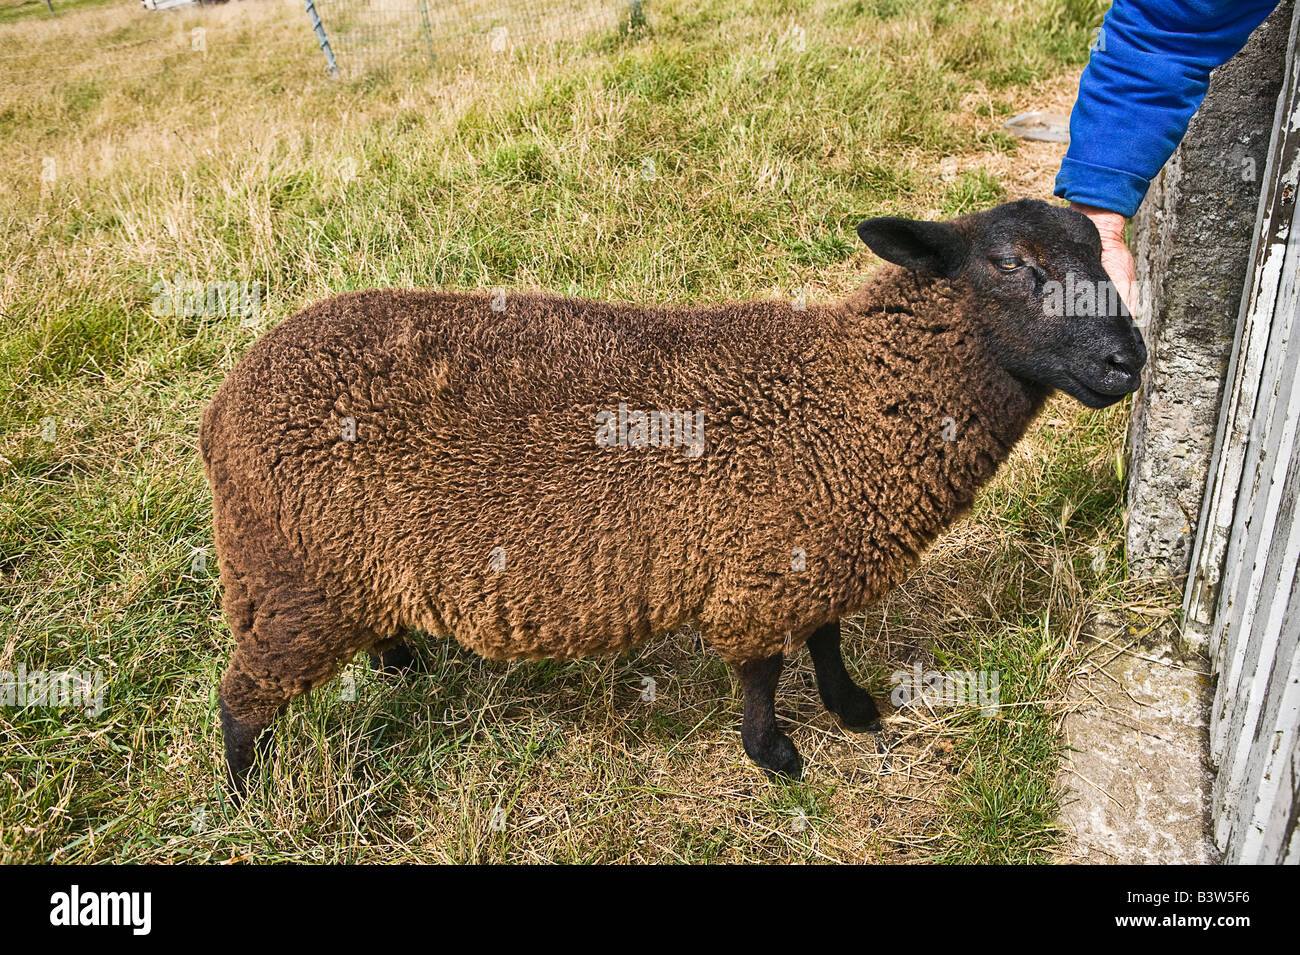 Mouton noir d'Ouessant île caressés Bretagne France Banque D'Images